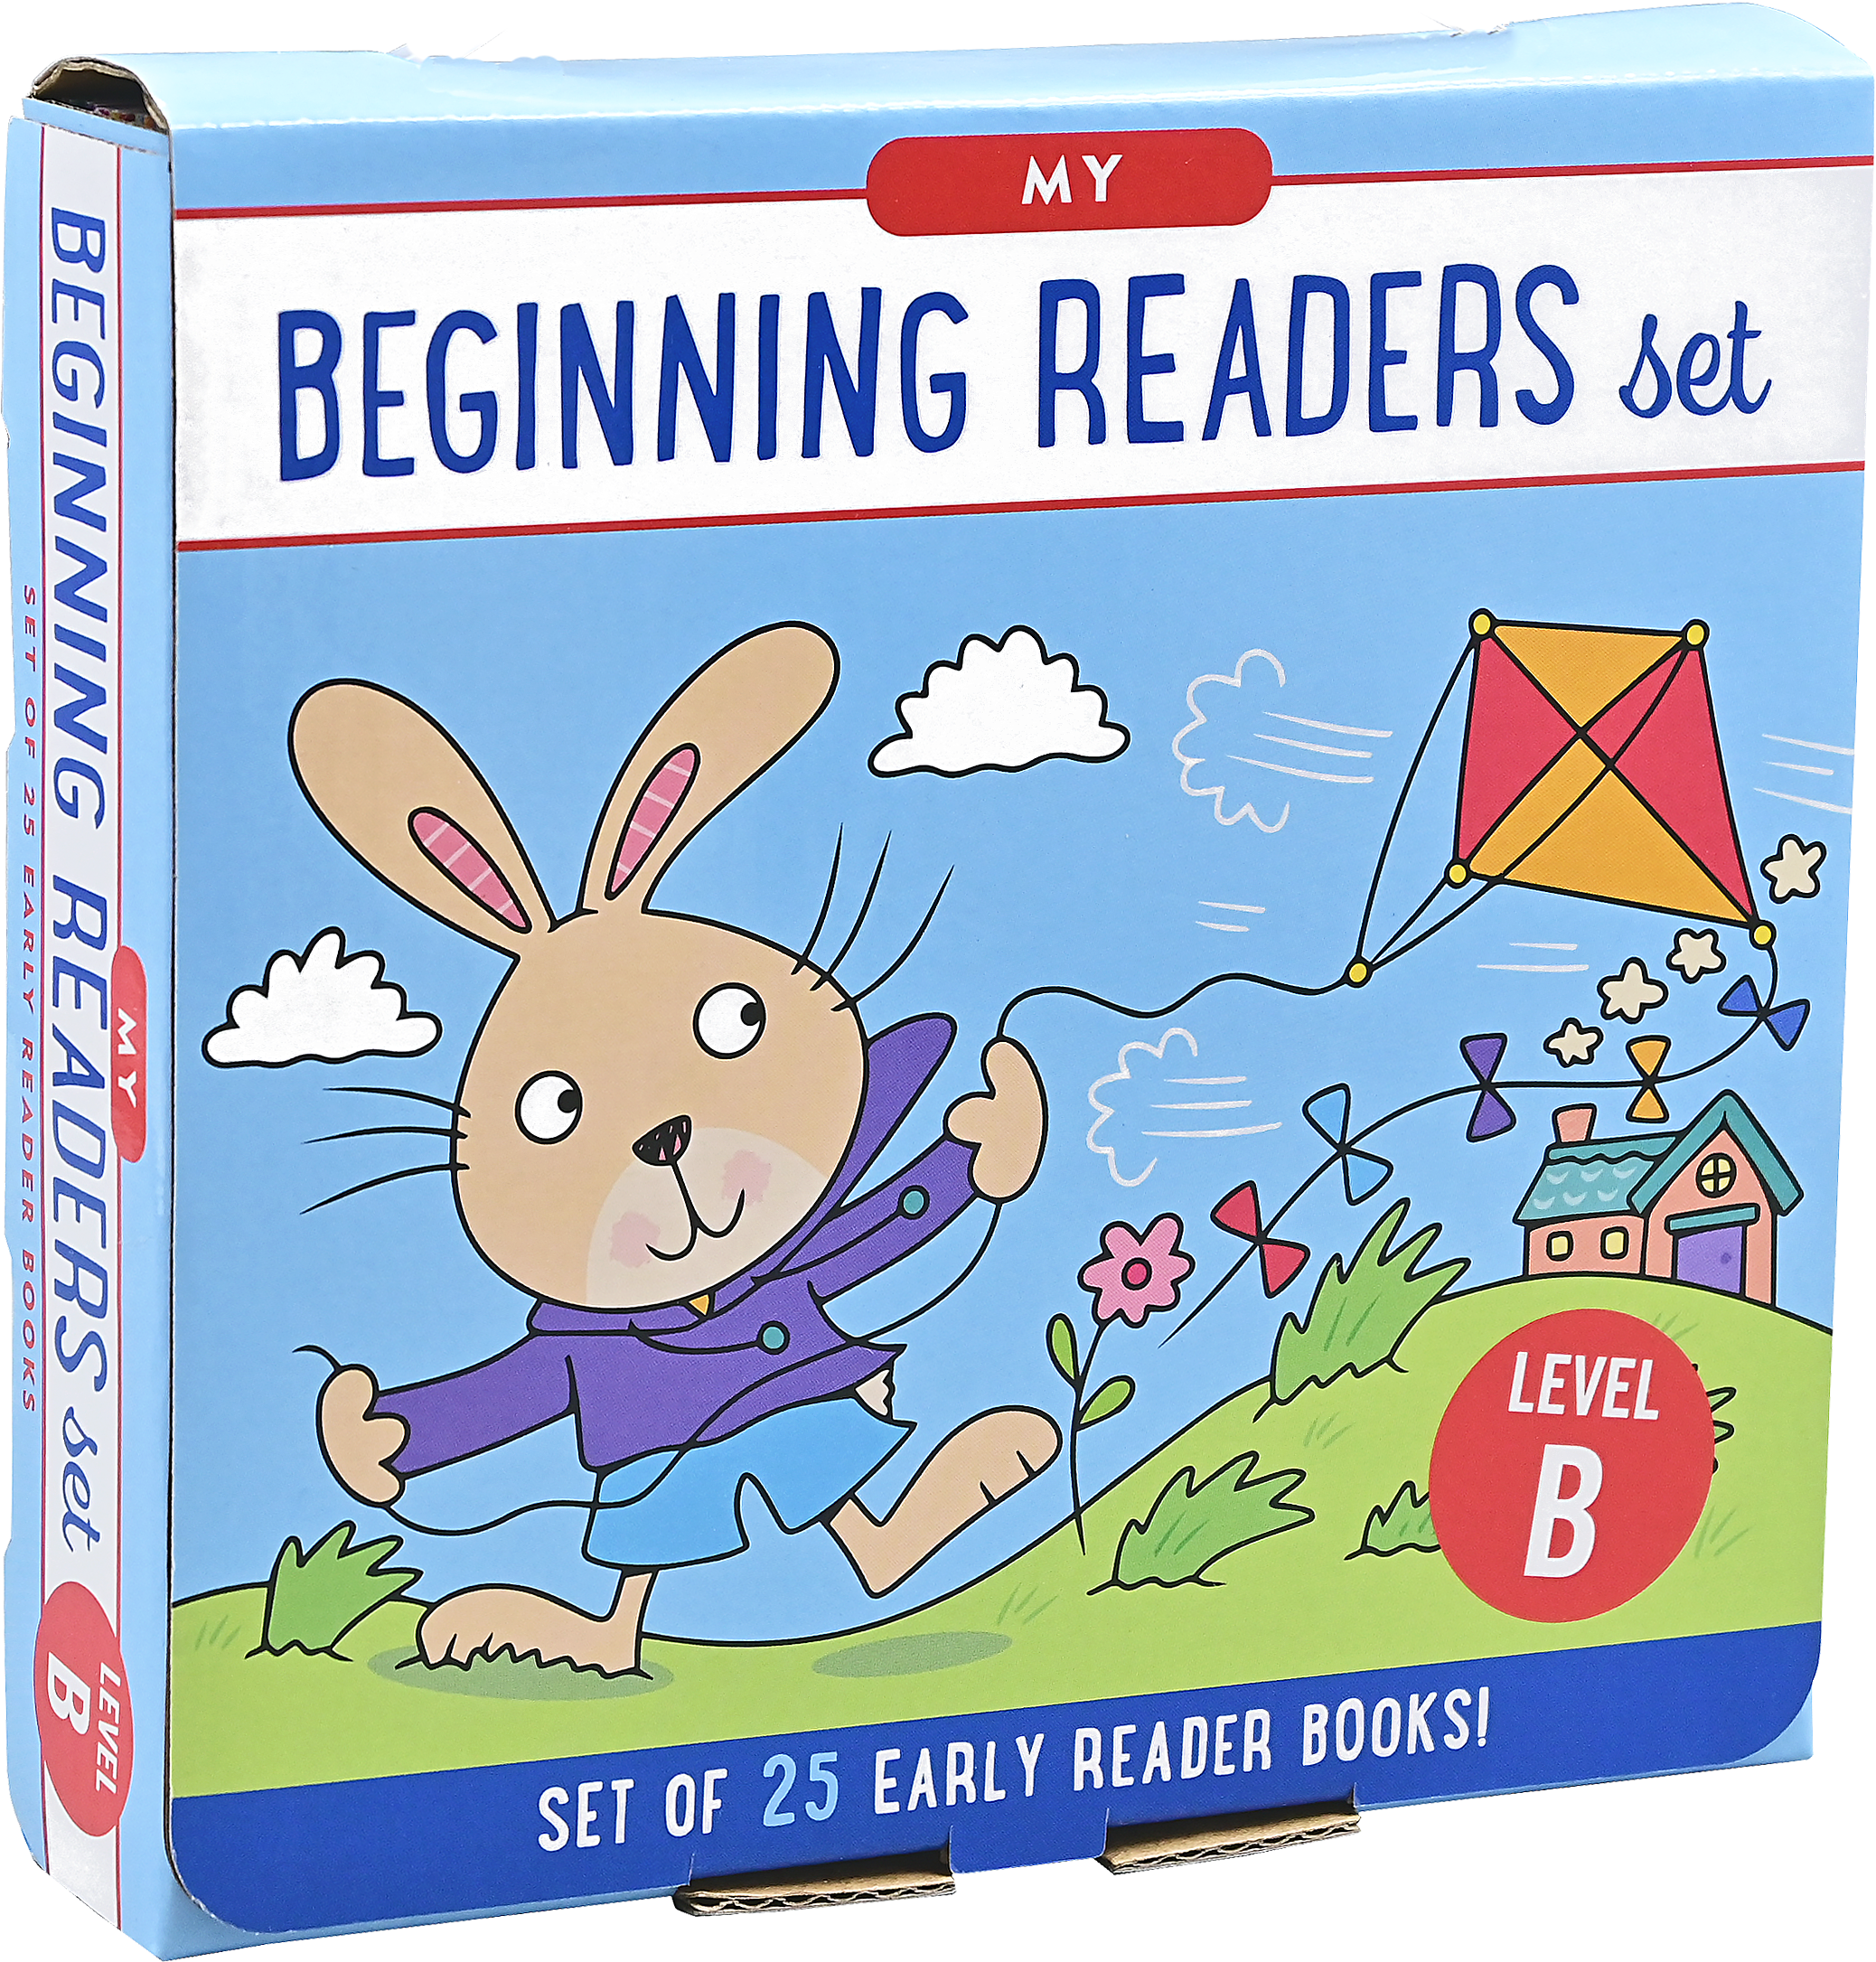 Peter Pauper Press - My Beginning Readers Set: Level B